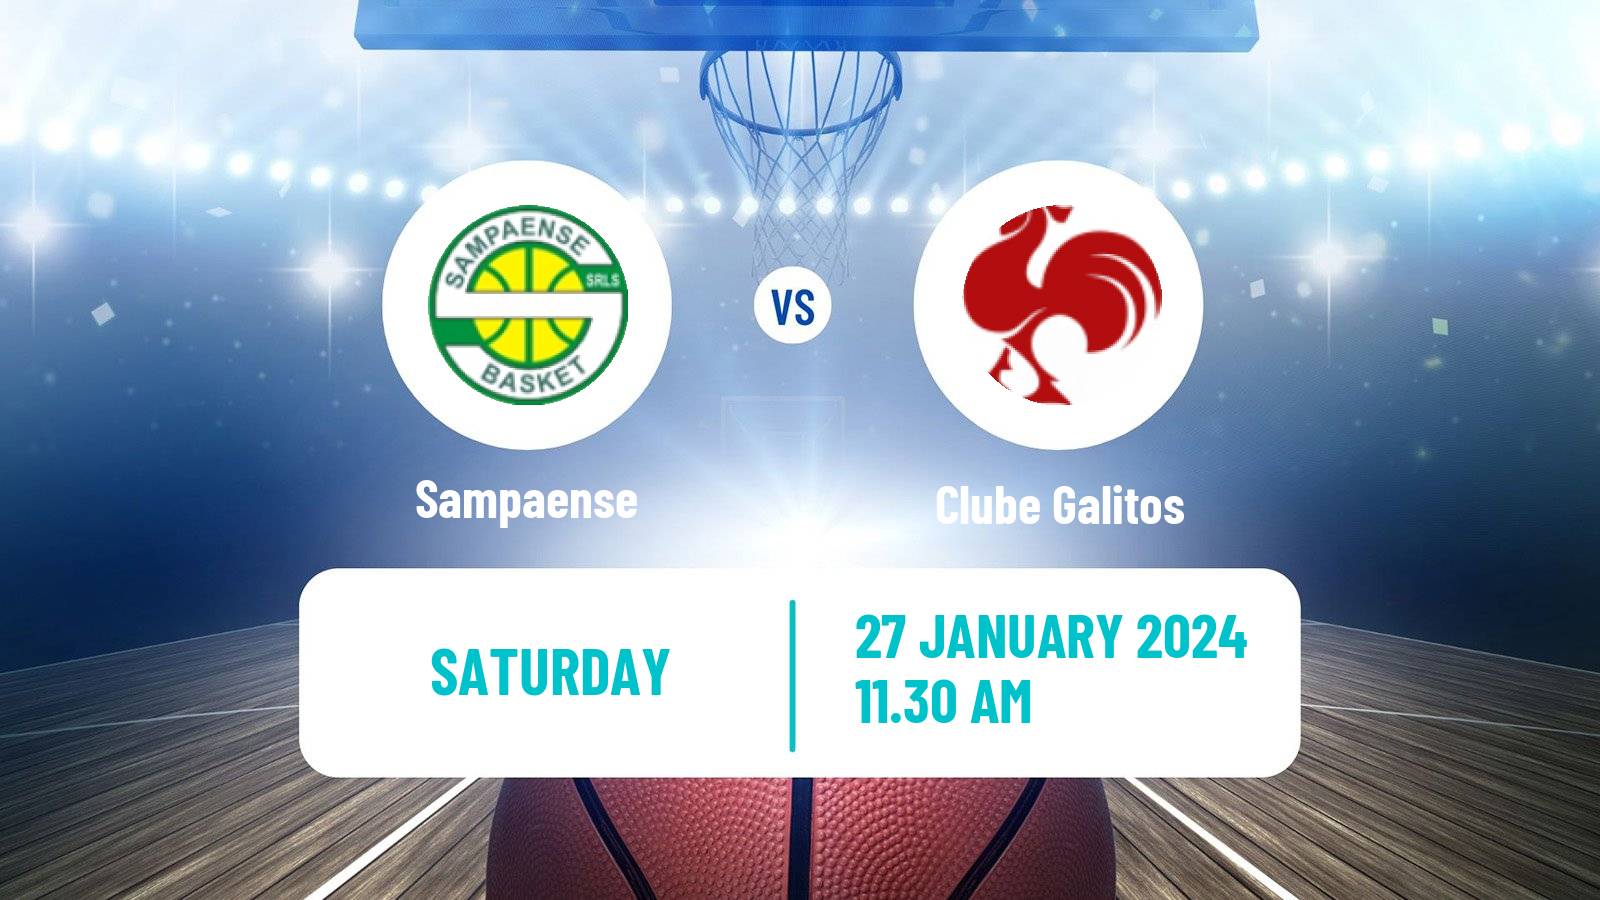 Basketball Portuguese Proliga Basketball Sampaense - Clube Galitos